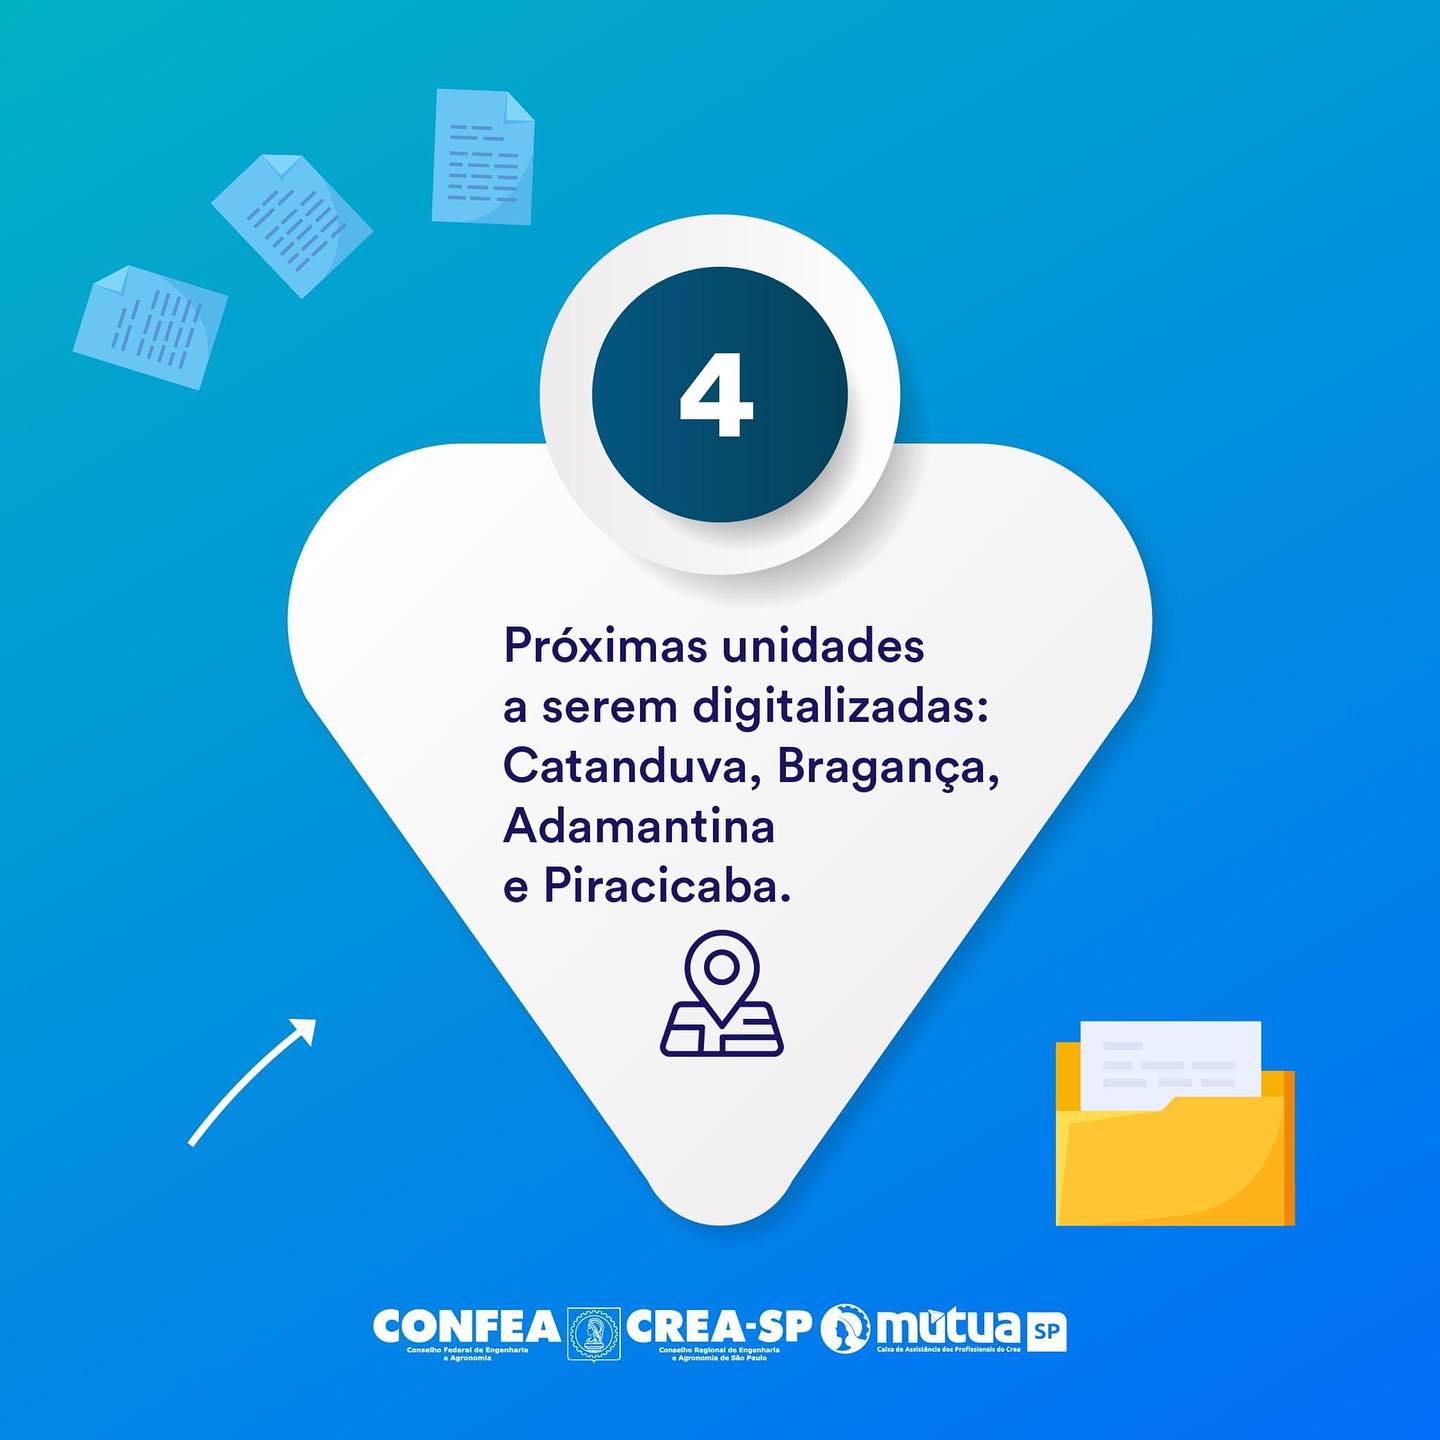 5 Repost @creasaopaulo O Crea-SP está ainda mais digital!